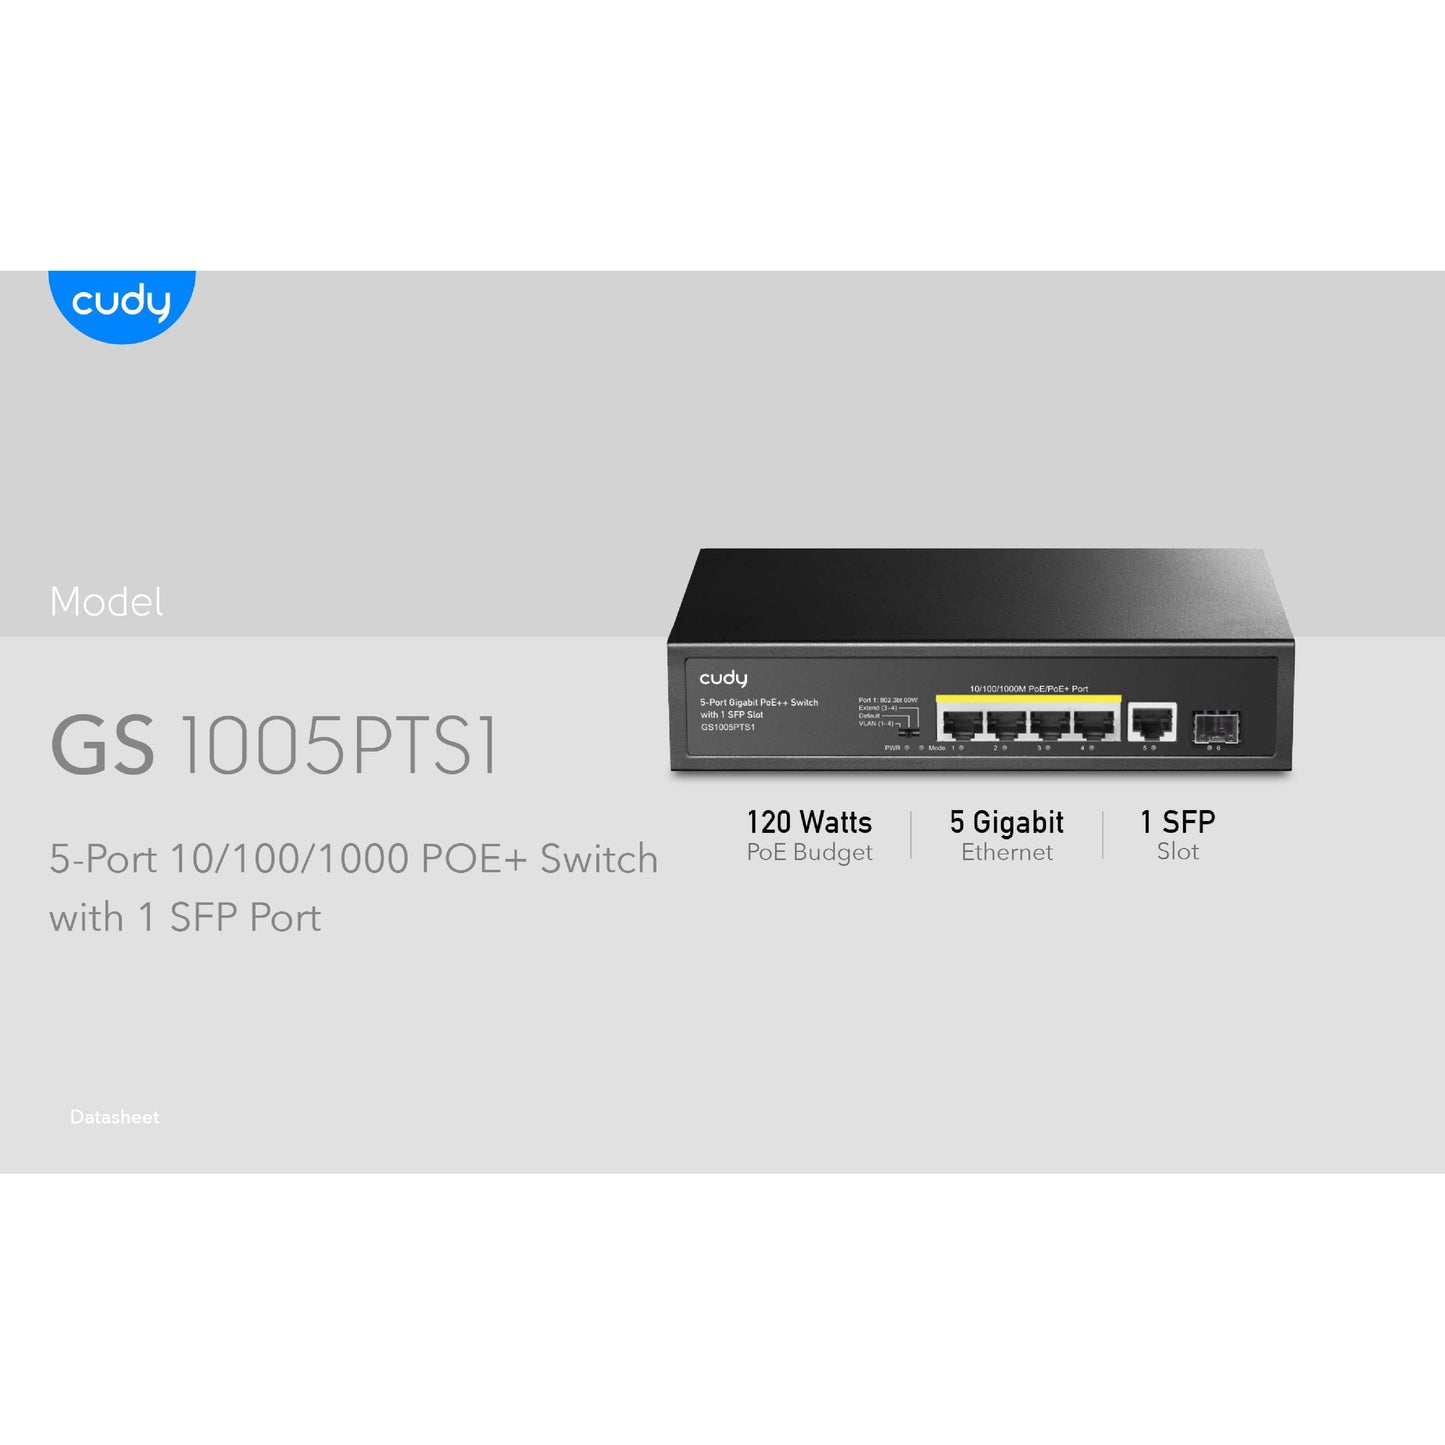 Cudy 5 Port Gigabit 4 PoE 120W 1SFP Switch | GS1005PTS1